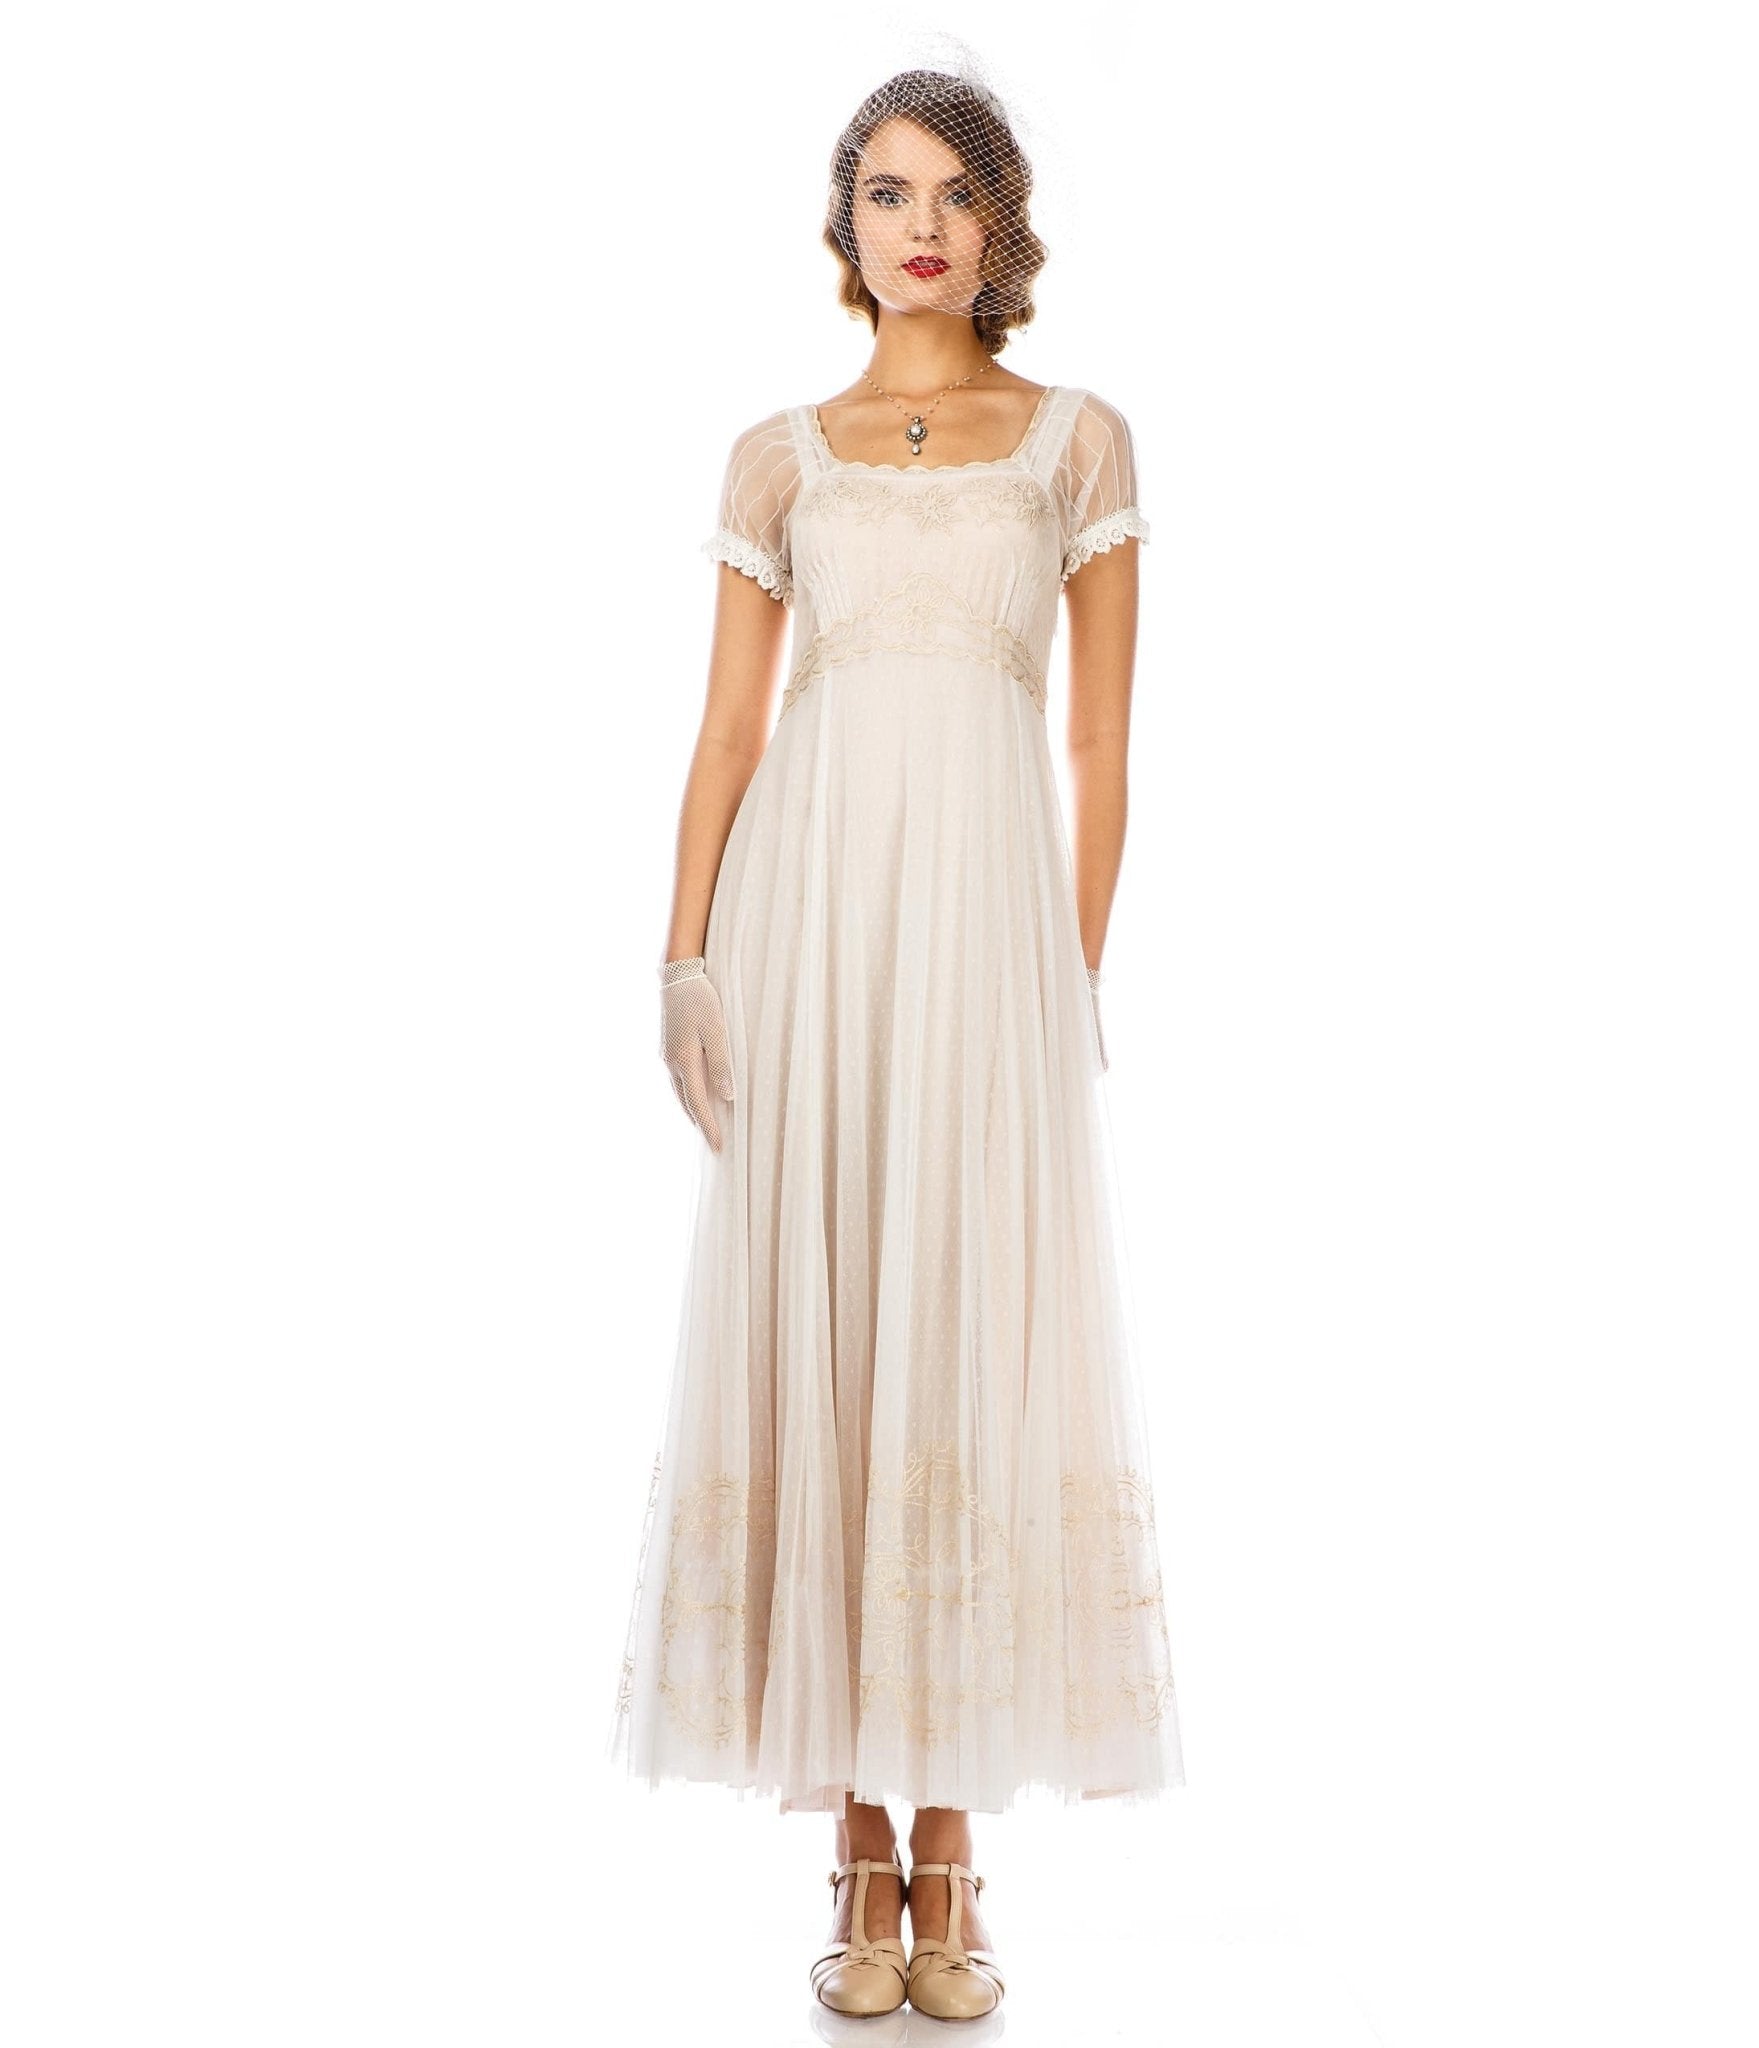 

Nataya Ivory Vintage Style Regency Wedding Flapper Dress